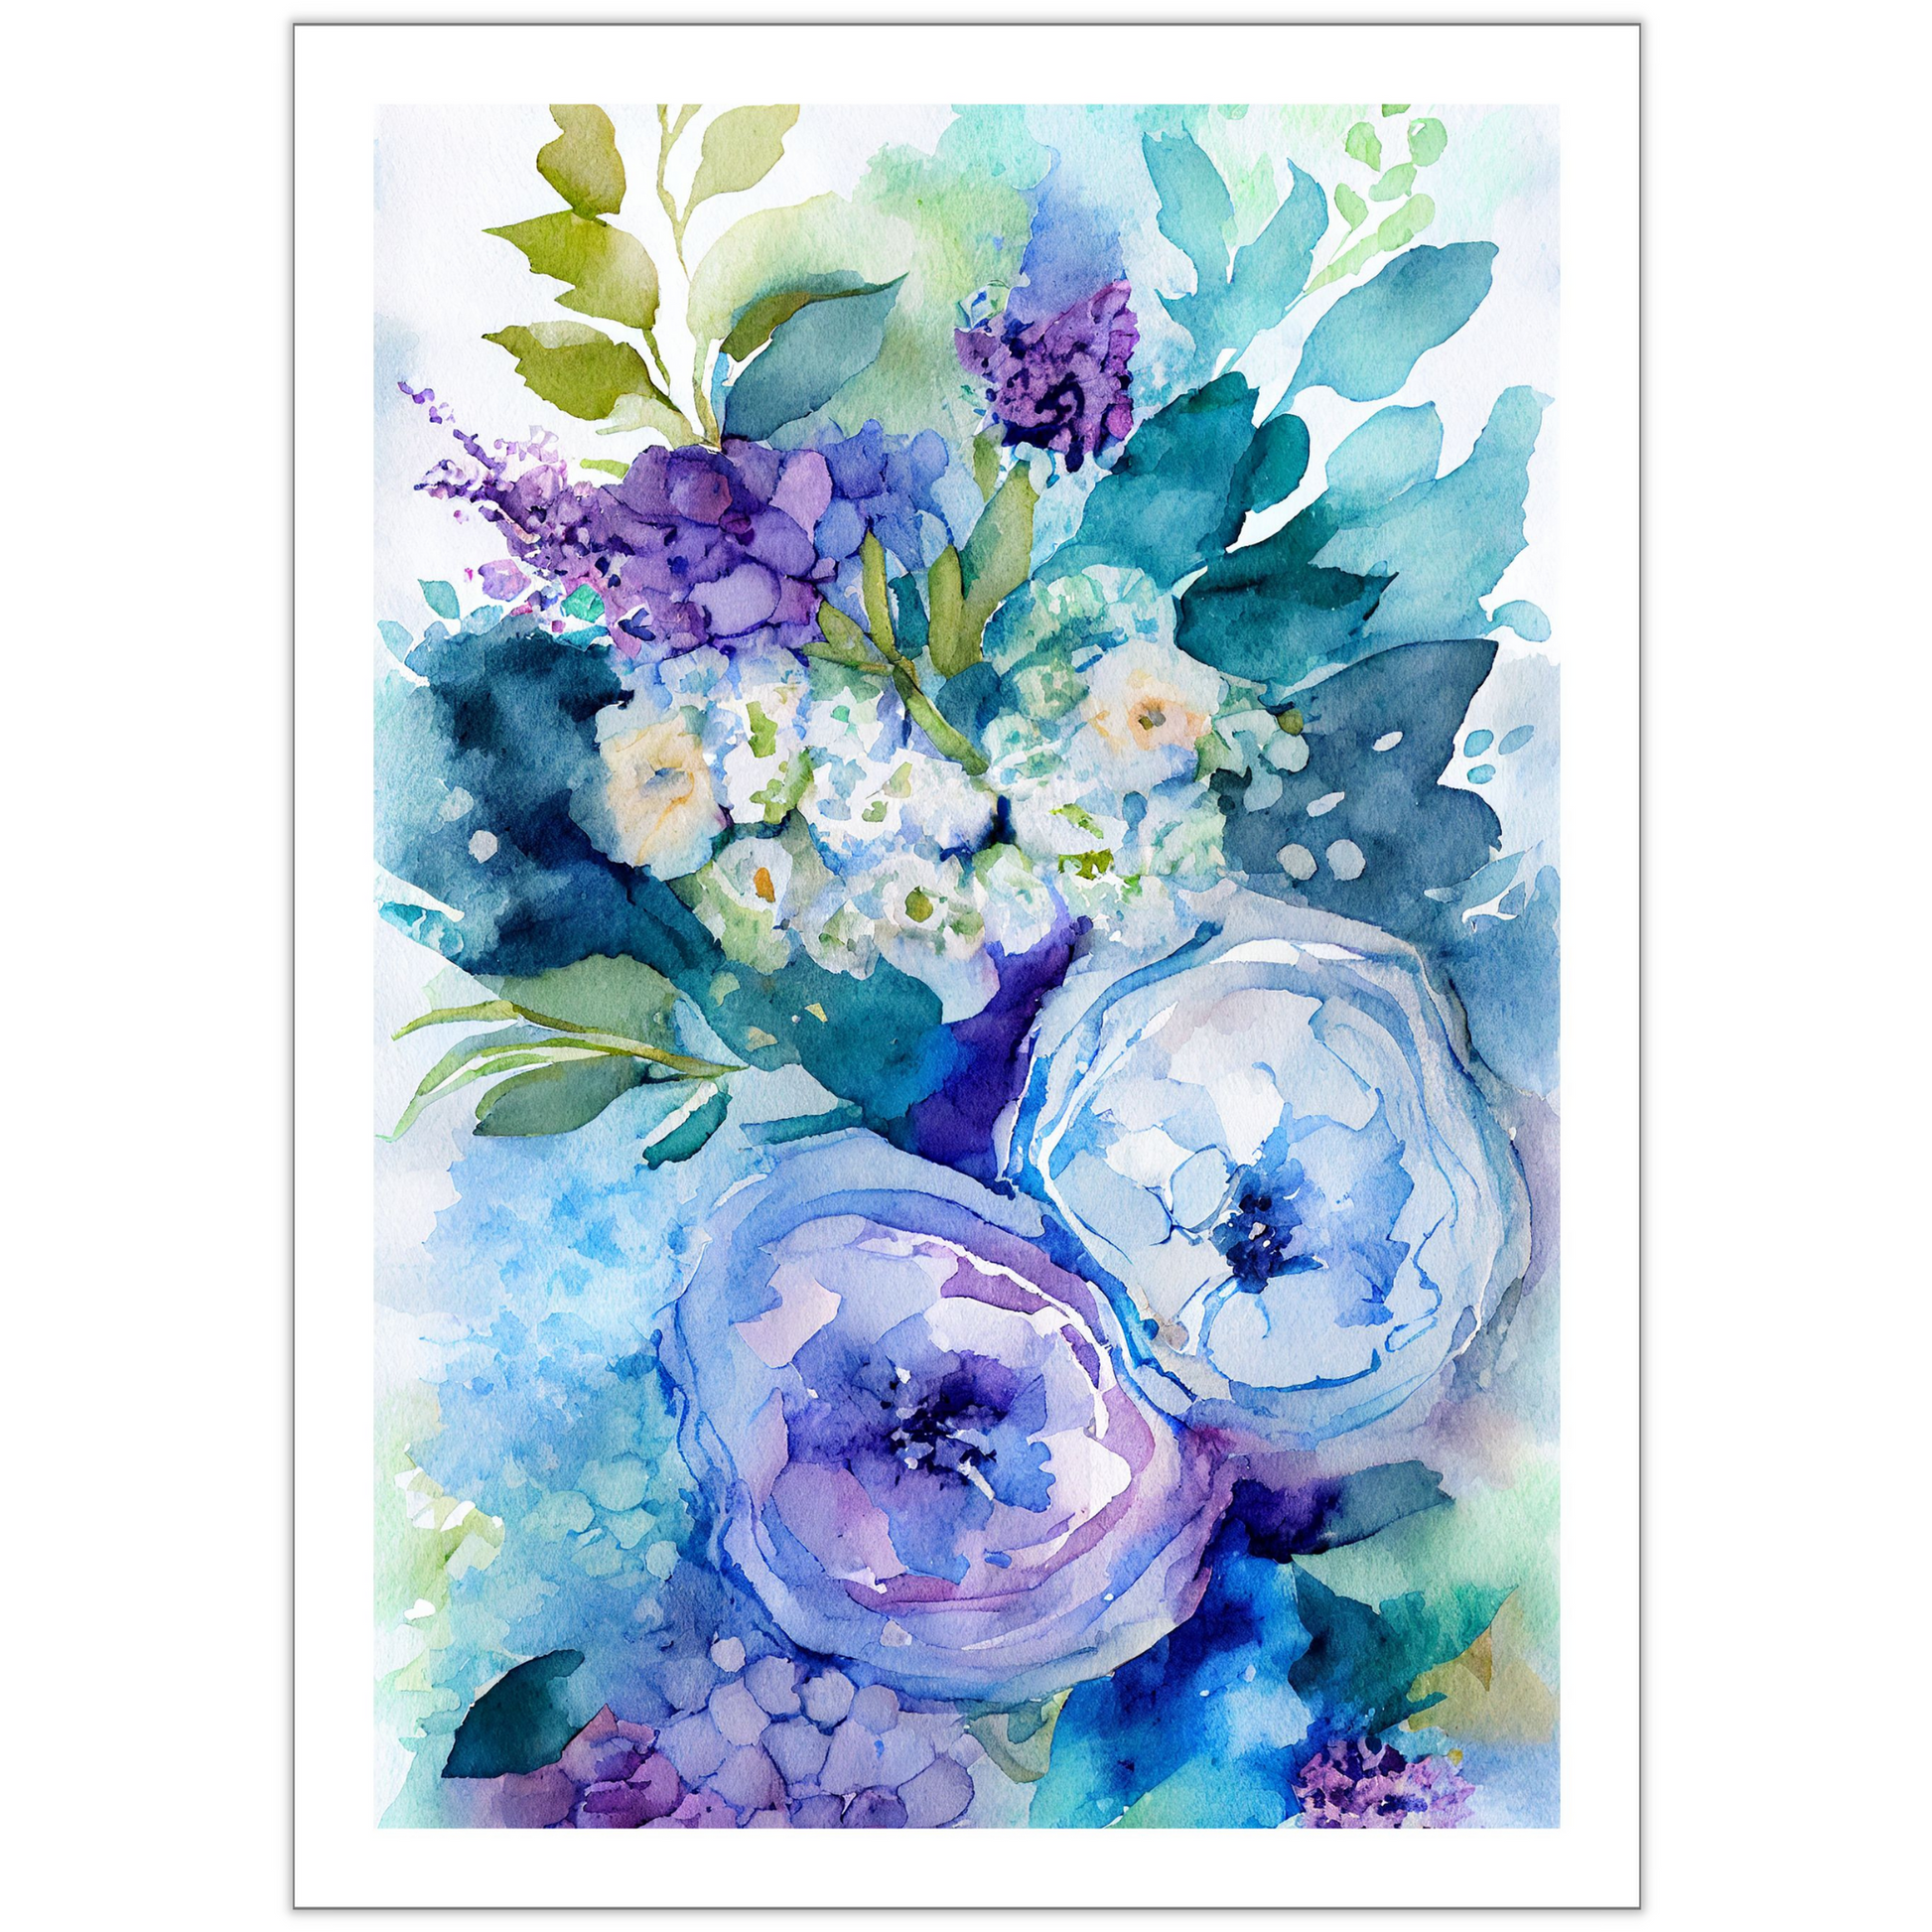 Blomstermotiv i vannfarger i nyanser grønn, beige, blå og lilla. Plakaten har hvit dekorativ kant rundt.